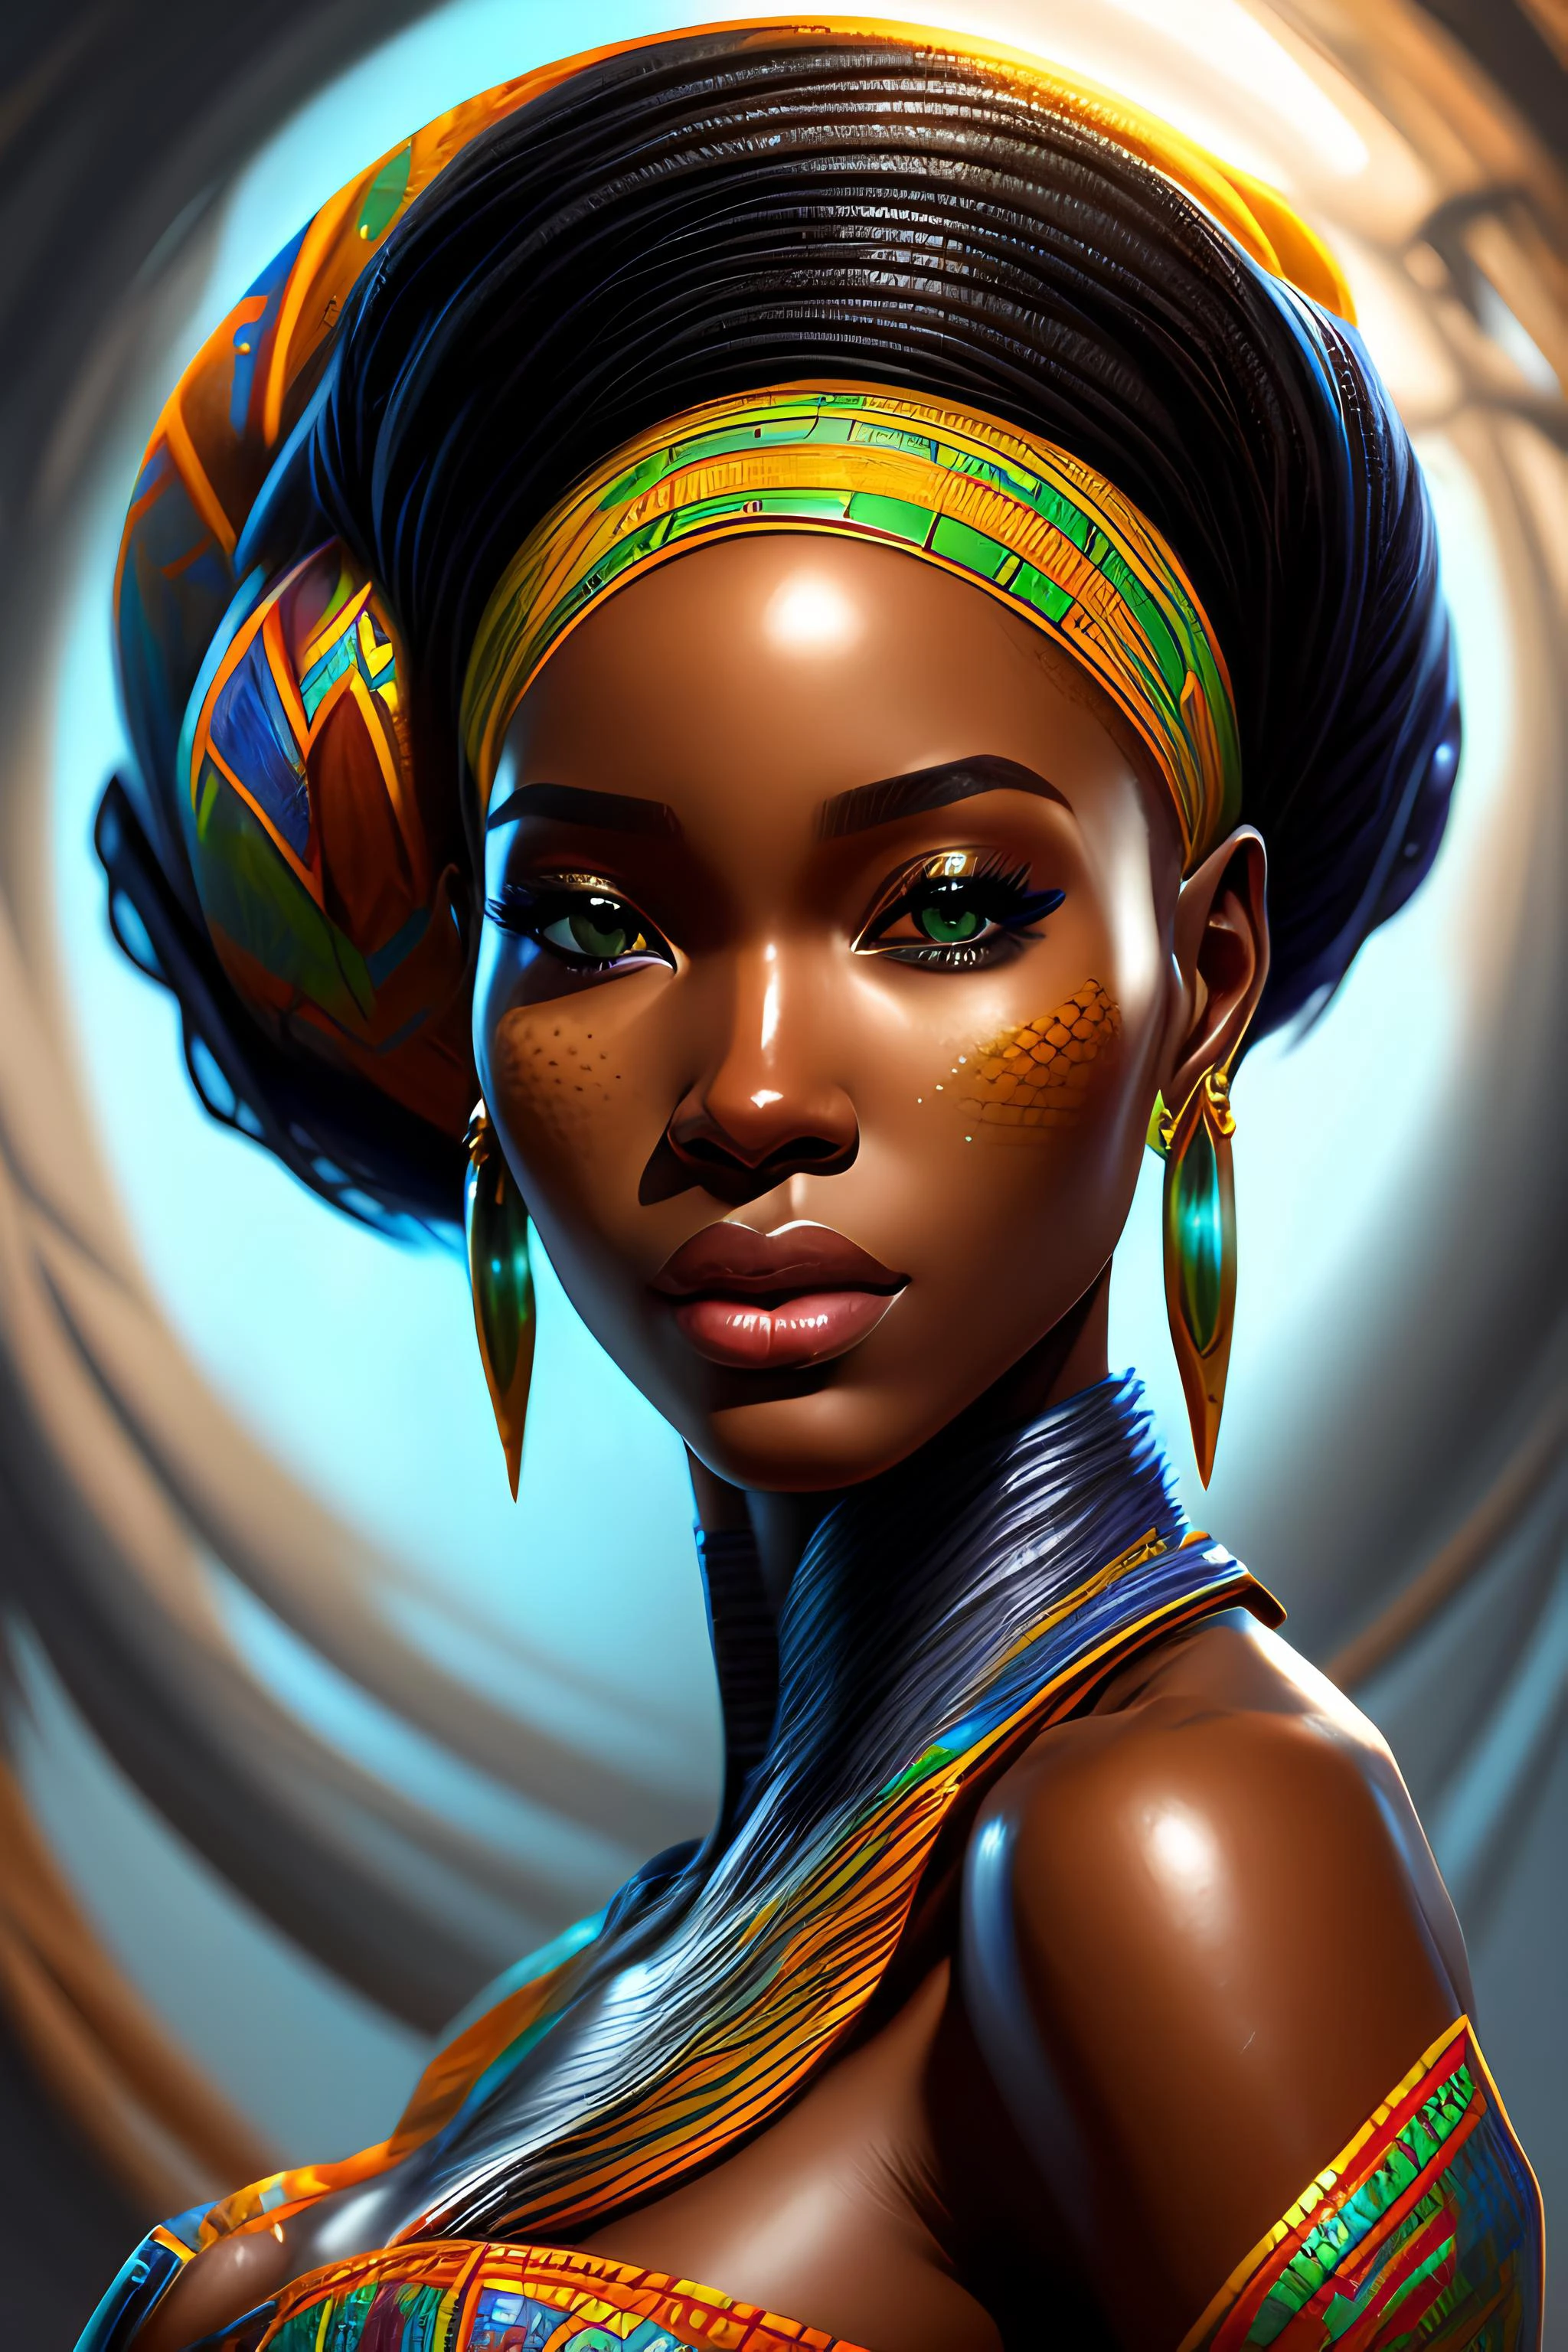 หญิงแอฟริกันที่สวยงาม, สว่าง, มีรายละเอียดสูง, การวาดภาพดิจิตอล, อาร์ตสเตชั่น, แนวคิดศิลปะ, โฟกัสคมชัด, ภาพประกอบ, โดย รอสส์ ตรัน และ วิเซนเต้ โรเมโร